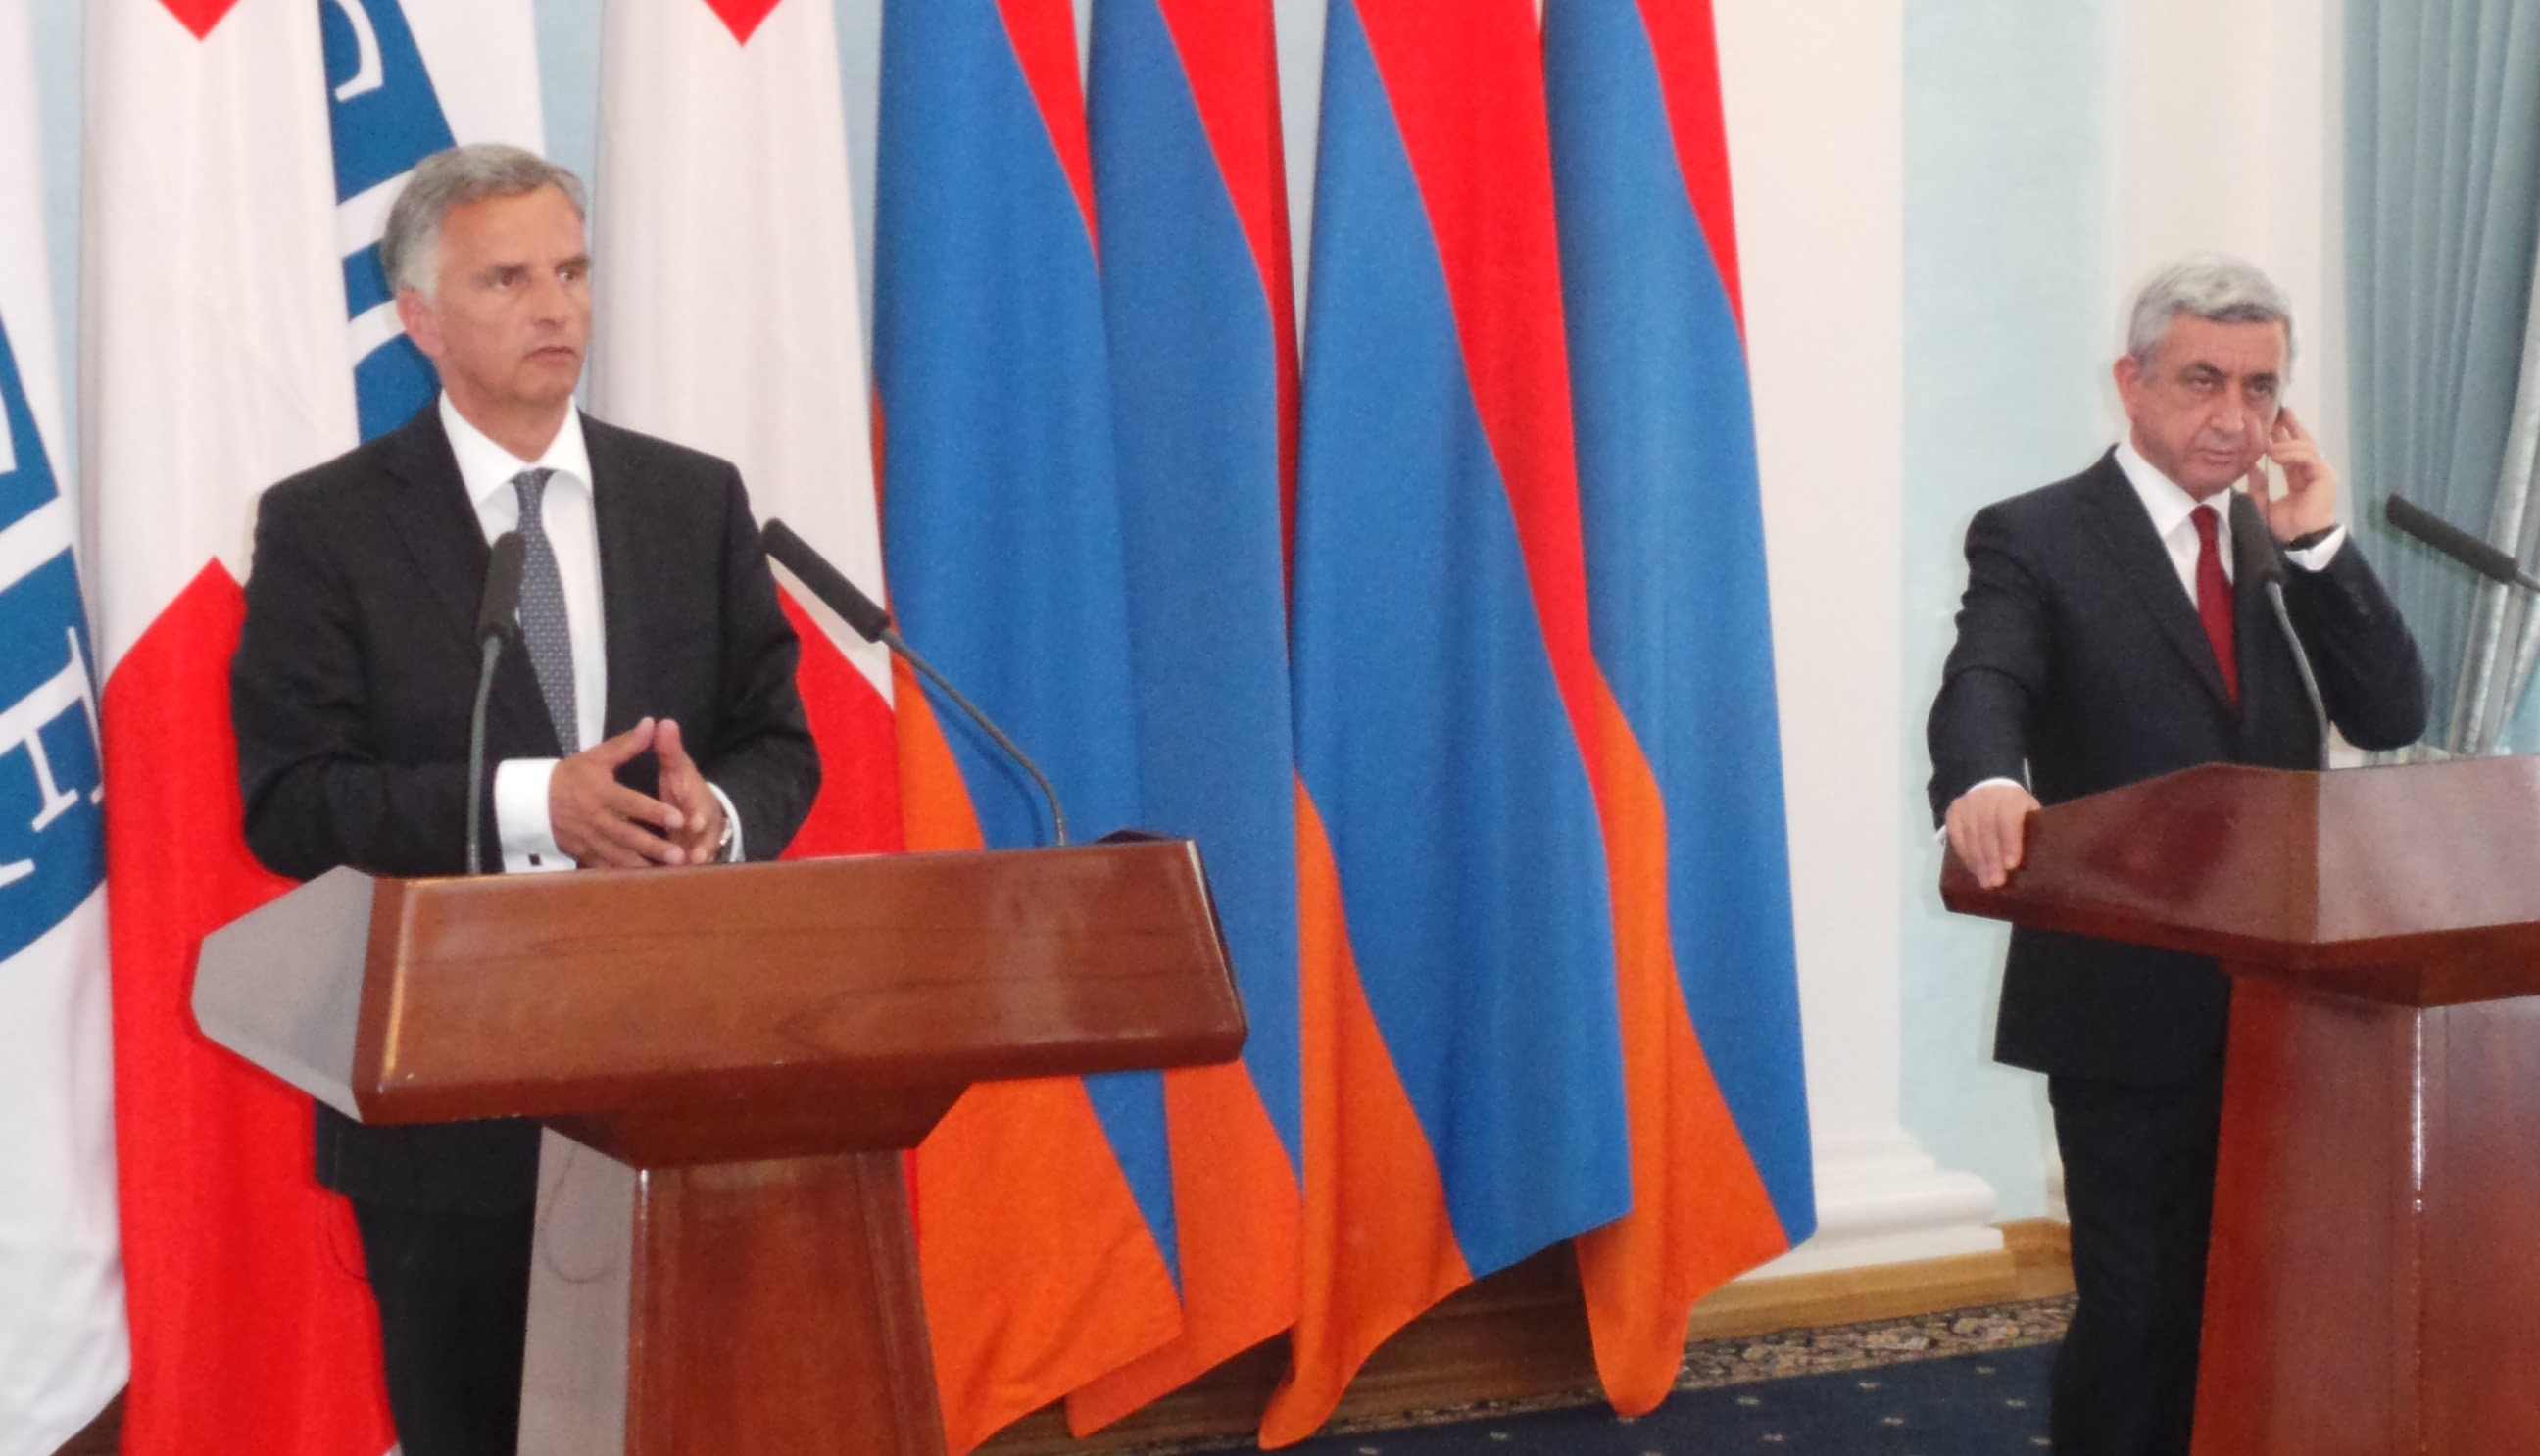 Le président de la Confédération Didier Burkhalter s’exprime en conférence de presse après un entretien avec le président arménien Serzh Sargsyan.